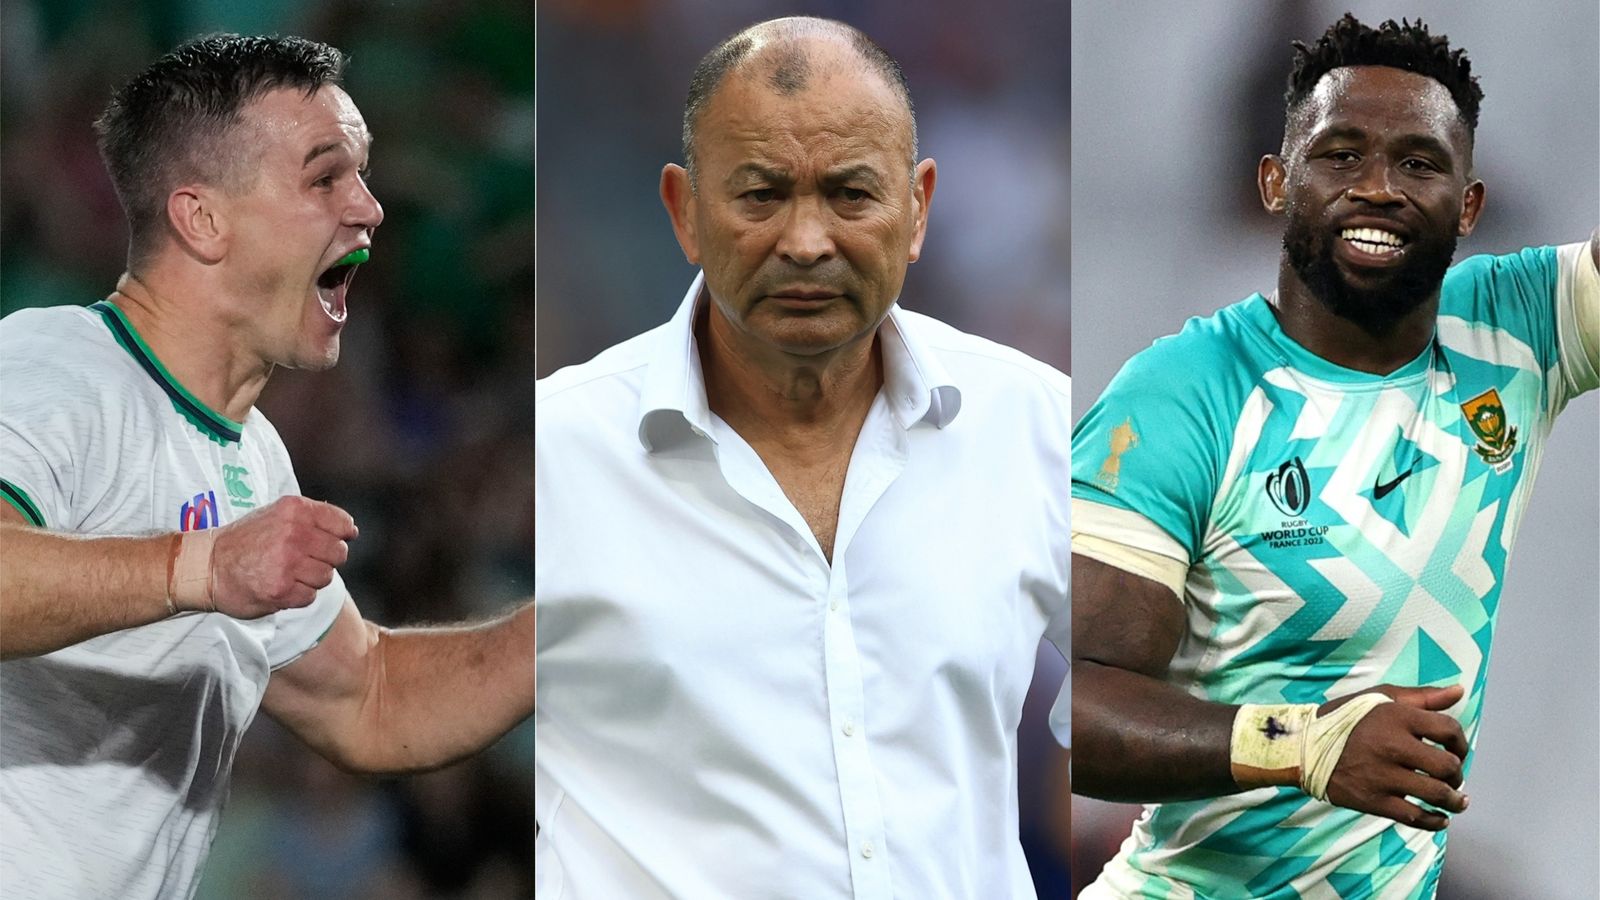 Coupe du monde de rugby : les Wallabies en danger contre le Pays de Galles dans le groupe C |  L’Irlande et l’Afrique du Sud visent la tête du match à succès du groupe B |  Actualités du rugby à XV